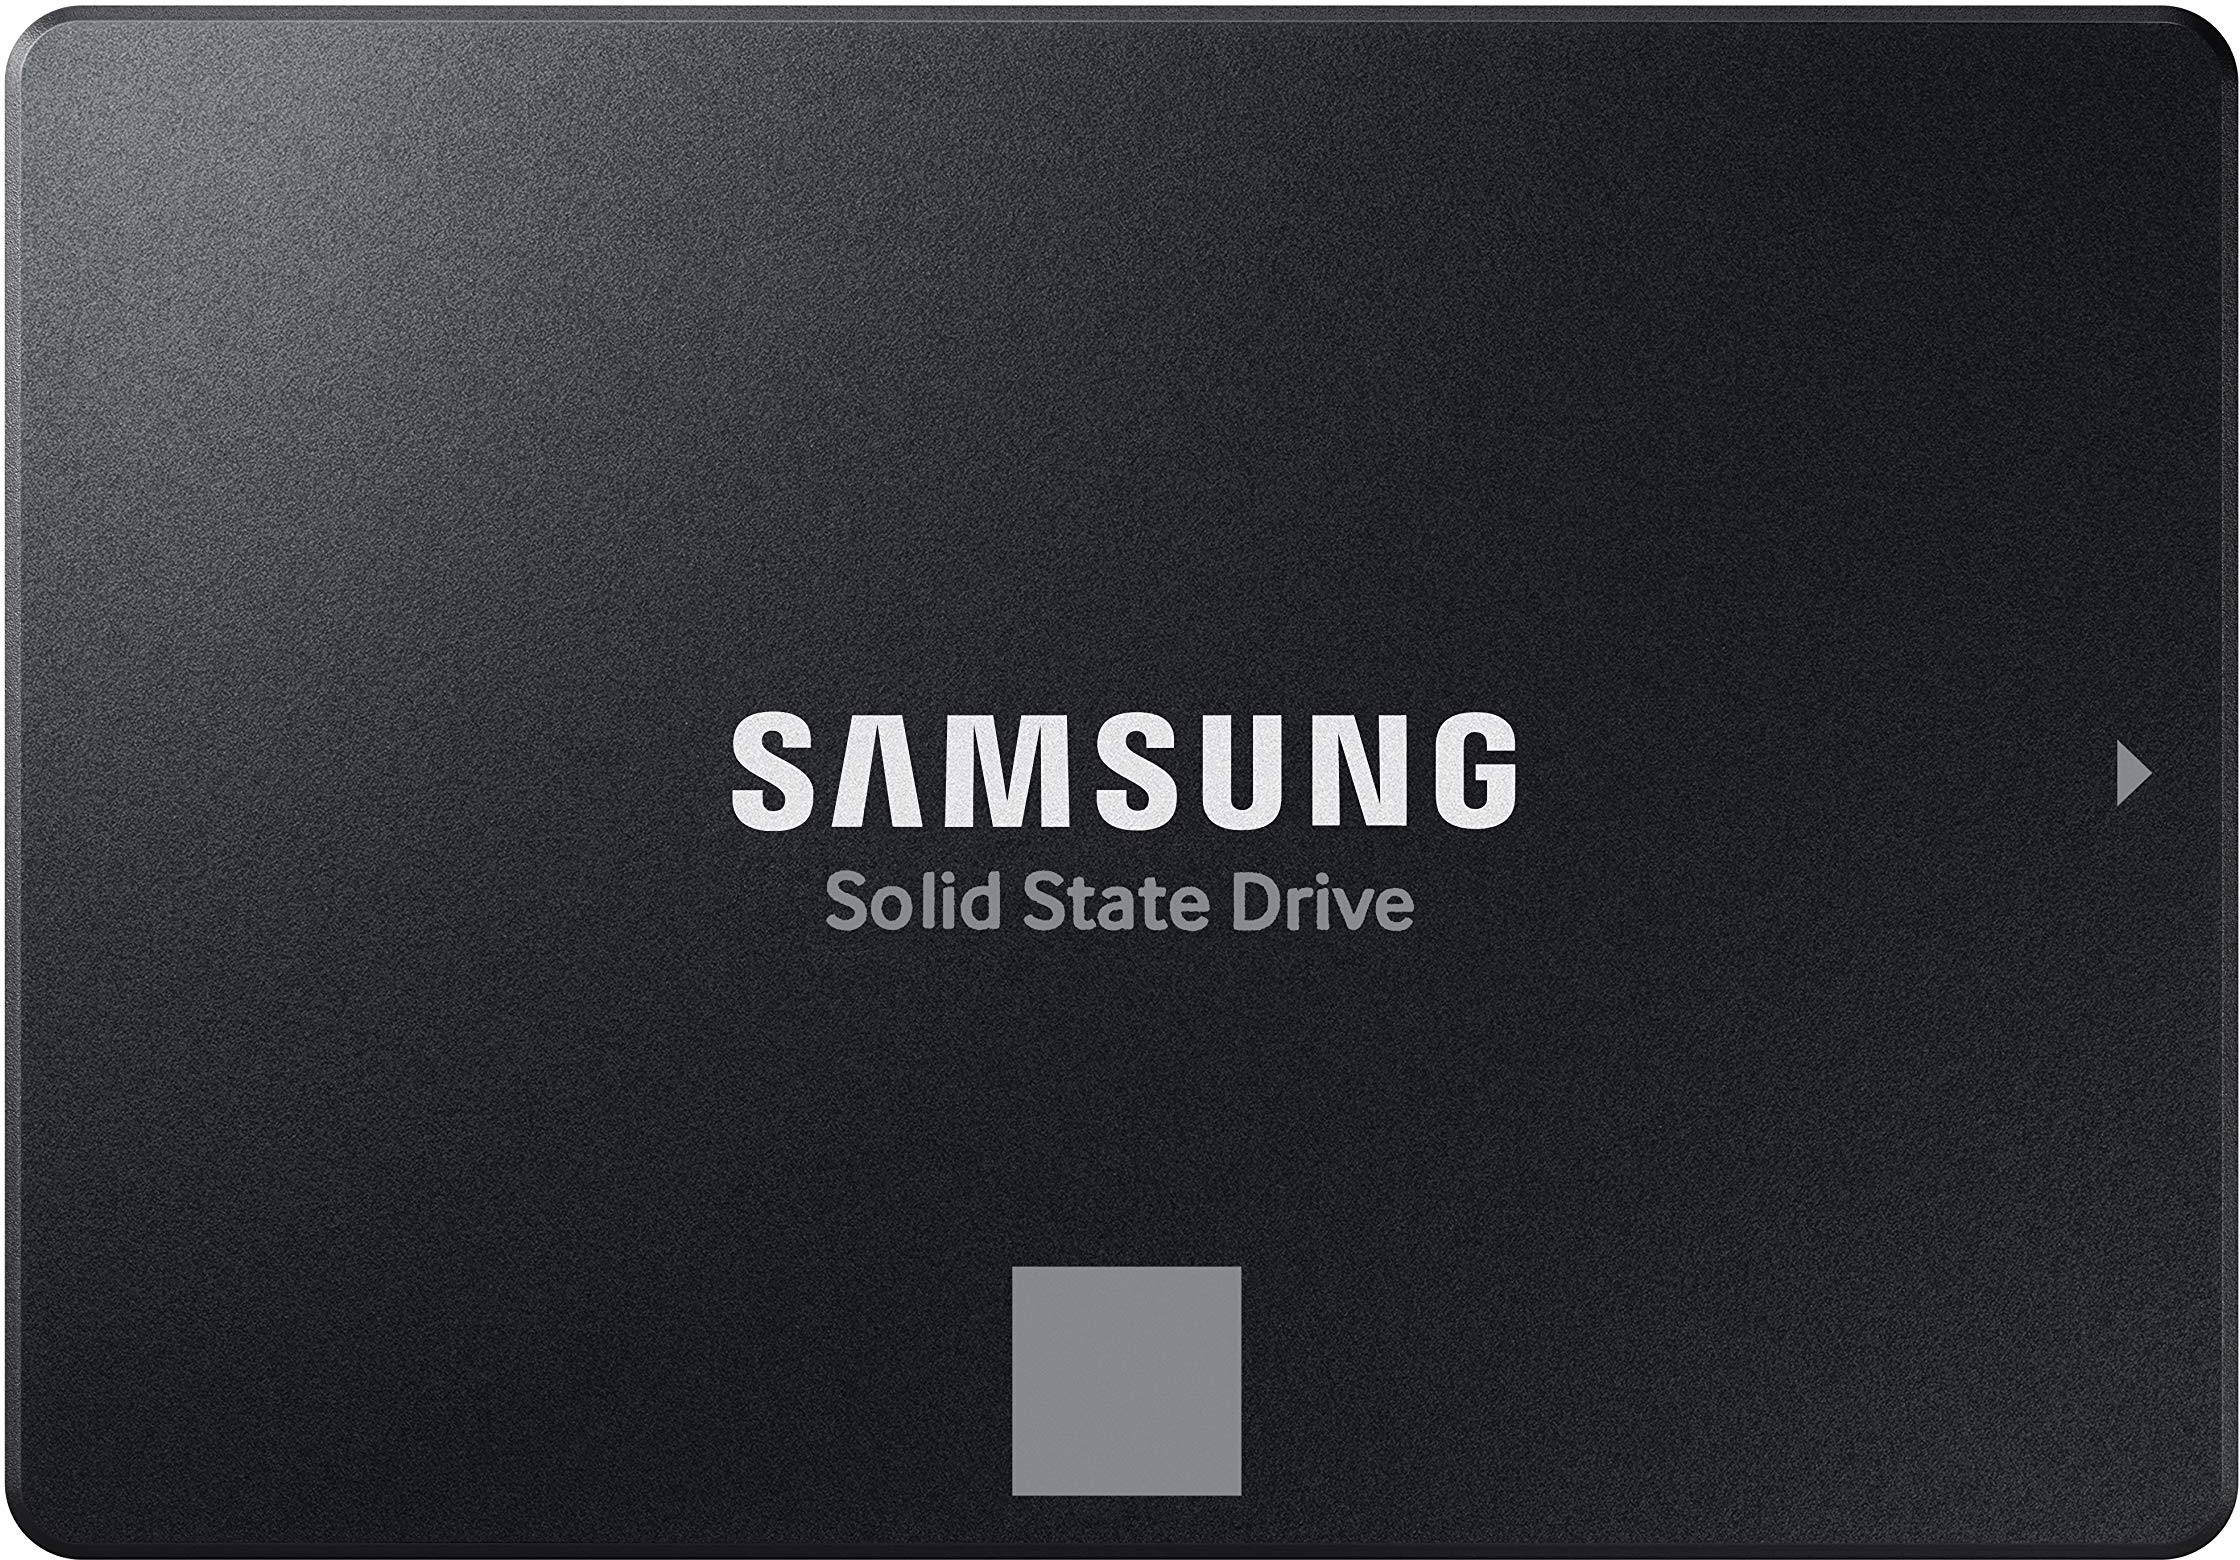 Samsung 870 EVO SATA III 2,5 Zoll SSD, 4 TB, 560 MB/s Lesen, 530 MB/s Schreiben, Interne SSD, Festplatte für schnelle Datenübertragung, MZ-77E4T0B/EU